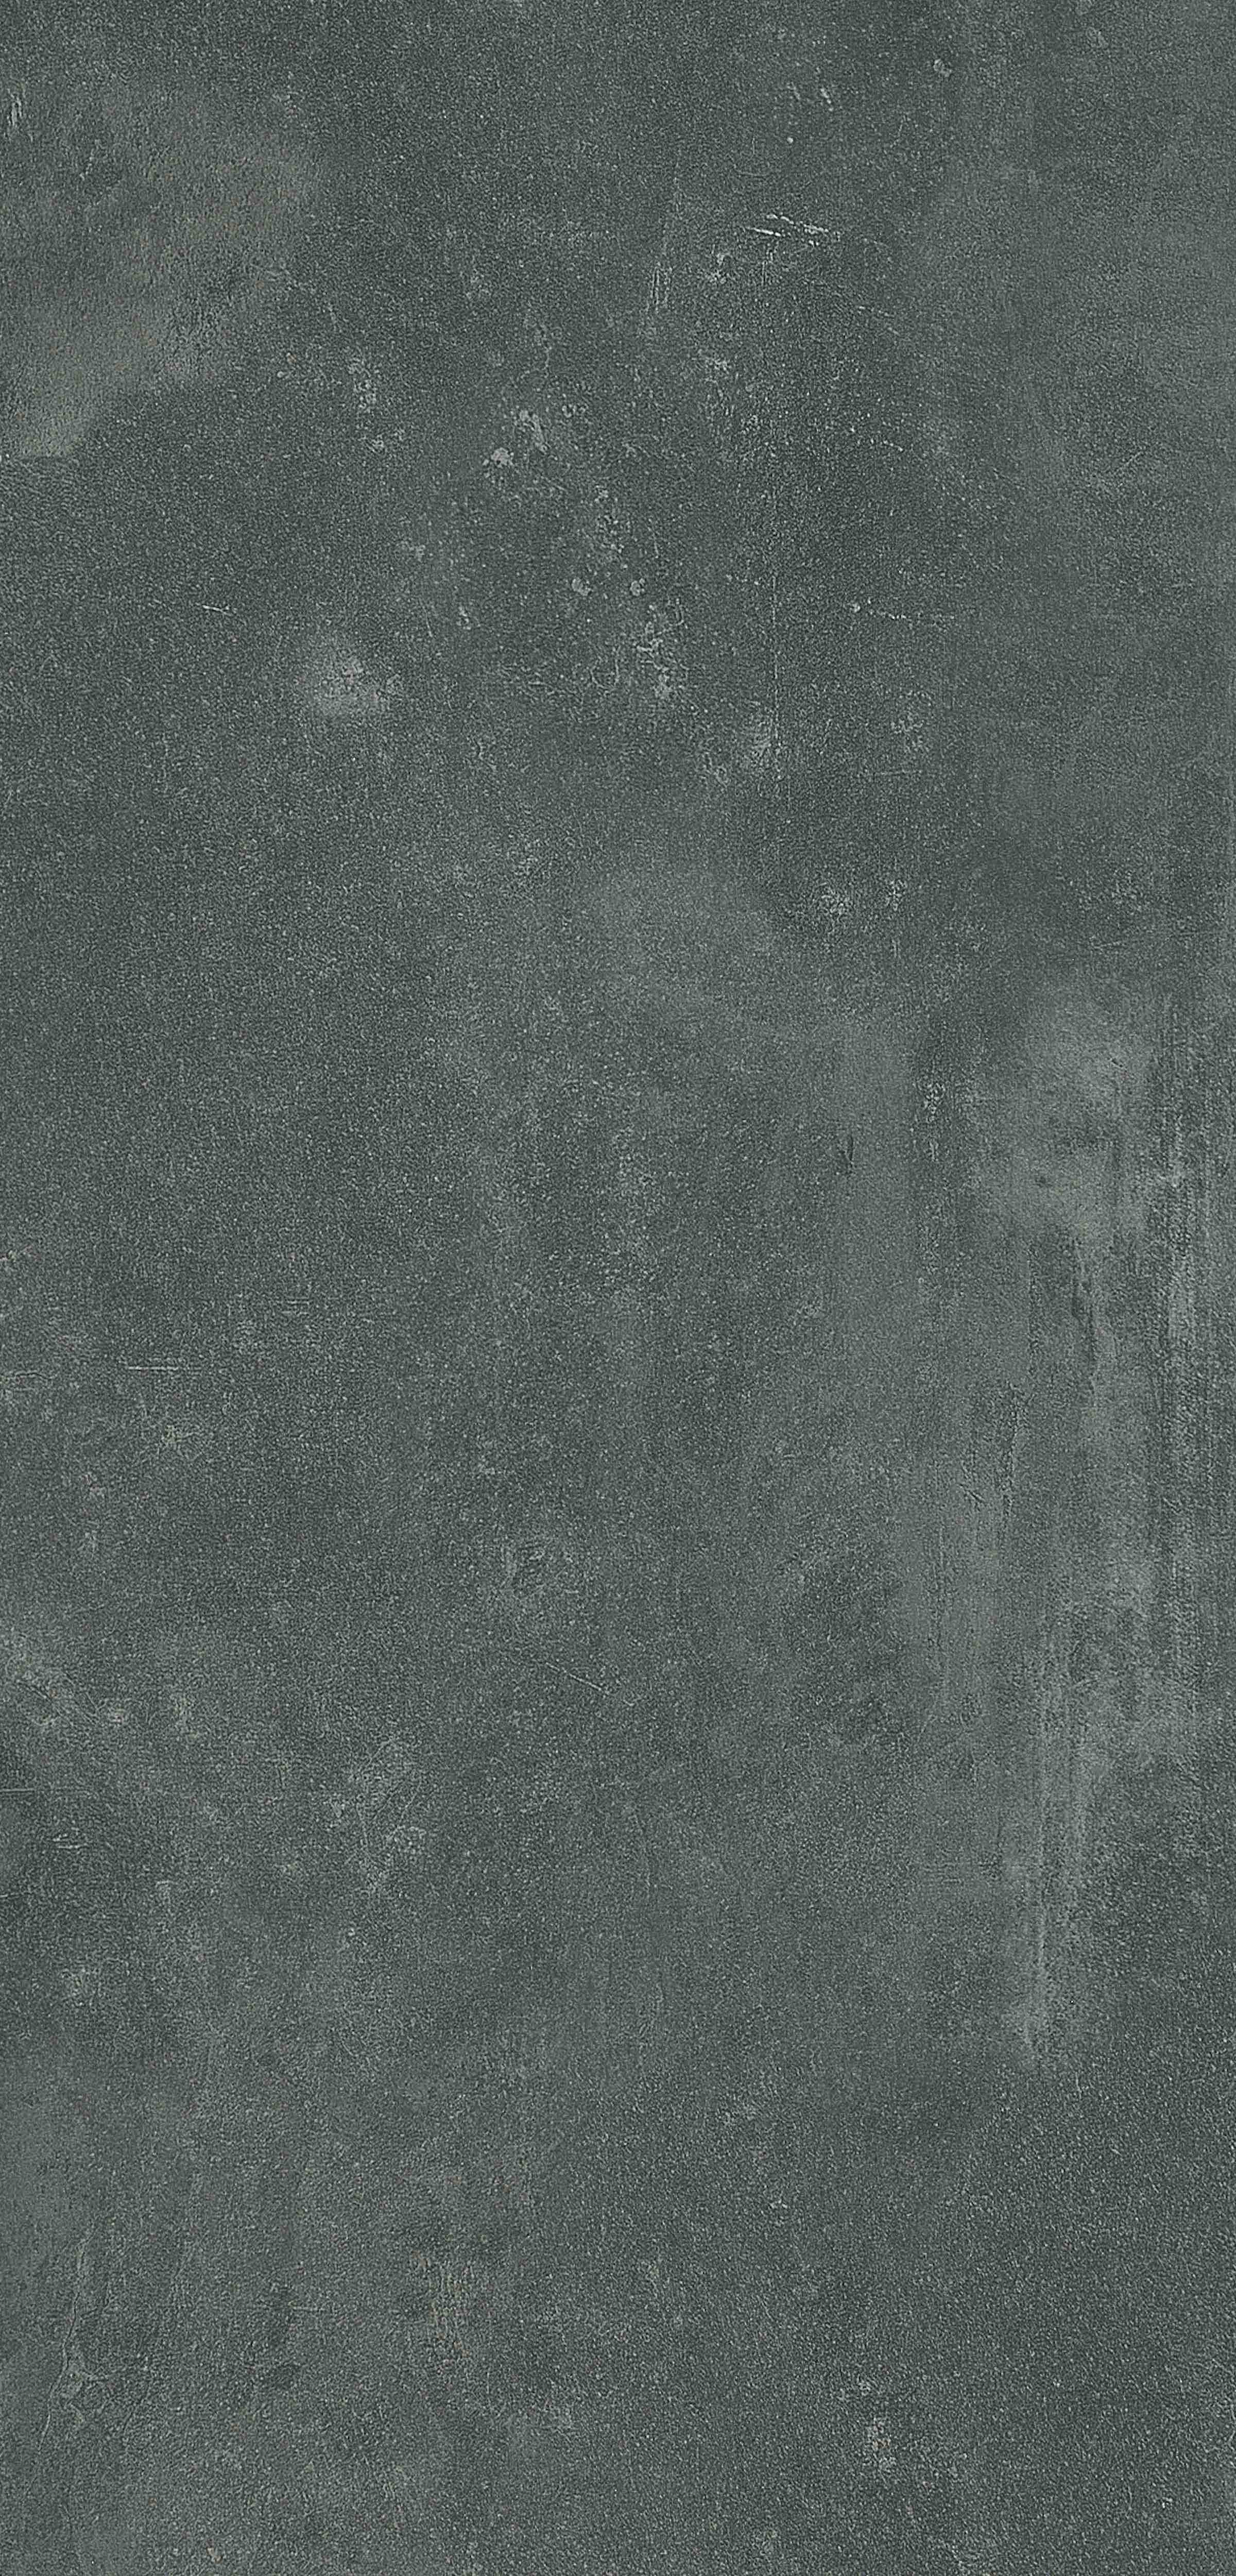 Duera | Cliffside Slate, 3136 | Paragon Carpet Tiles | Commercial Carpet Tiles